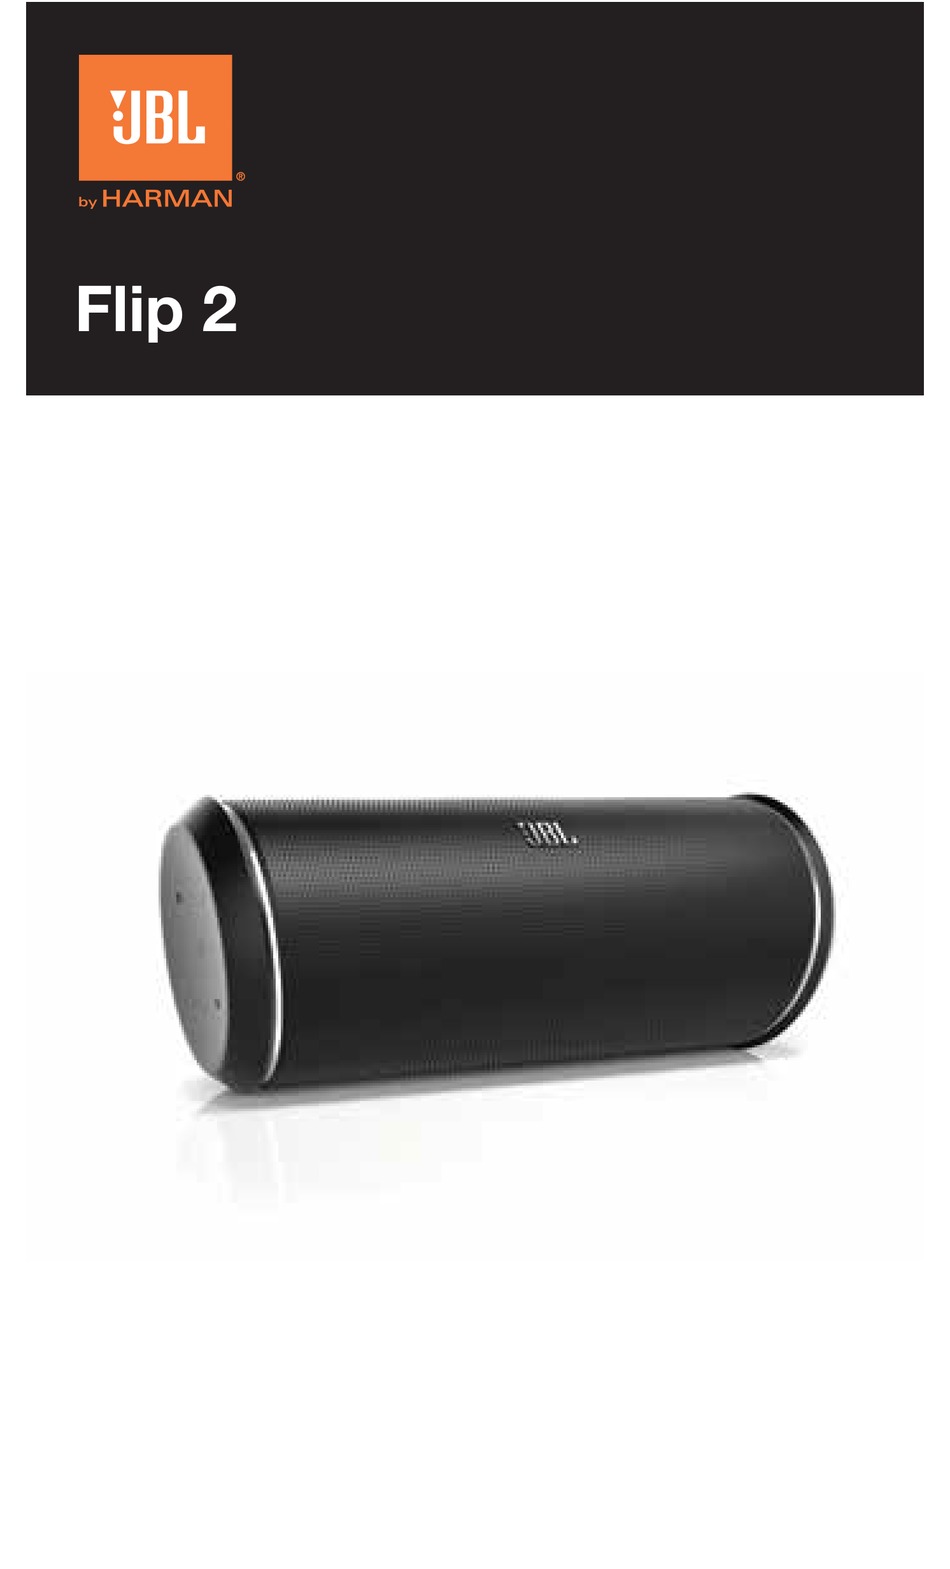 jbl flip 2 portable wireless bluetooth speaker